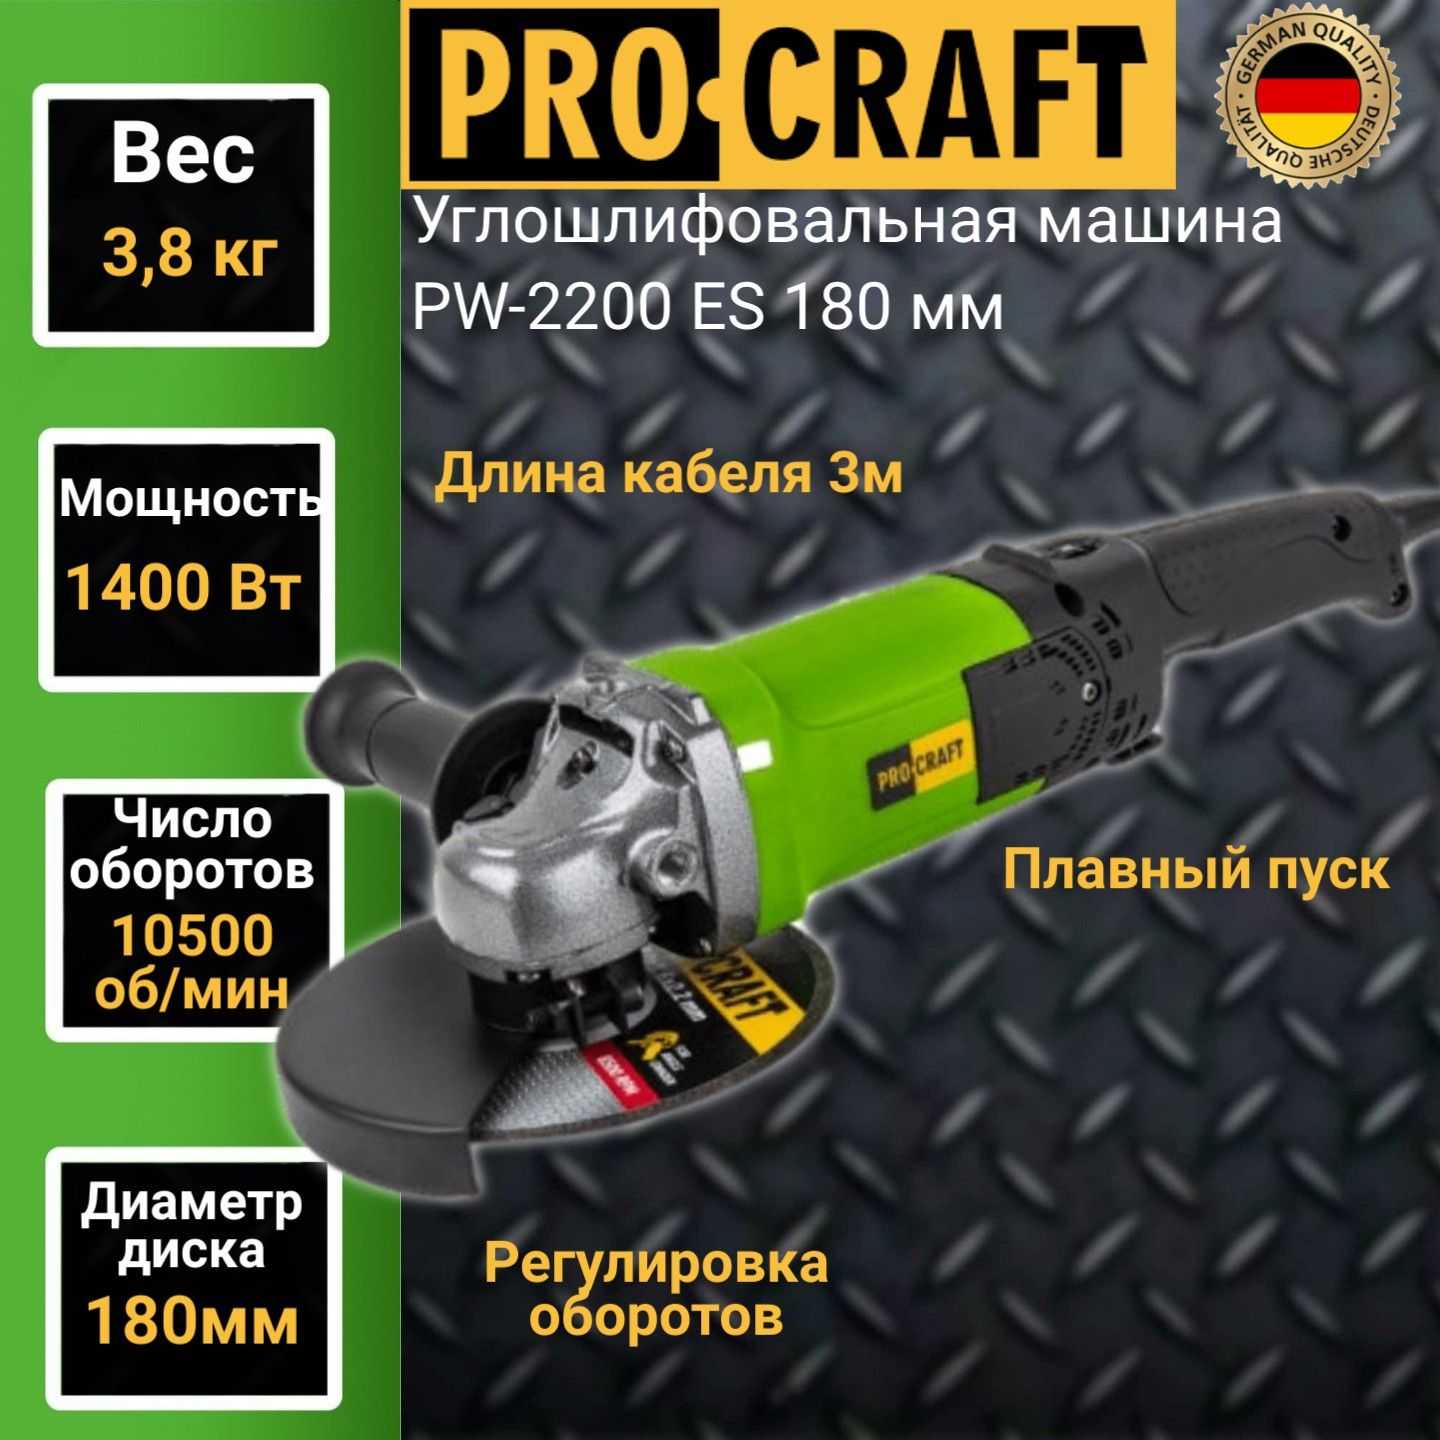 Углошлифовальная машина болгарка Procraft PW-2200ЕS, 180мм круг, 1400Вт, 10500об/мин углошлифовальная машина worx wx812 акб 4 ач зу 2 а